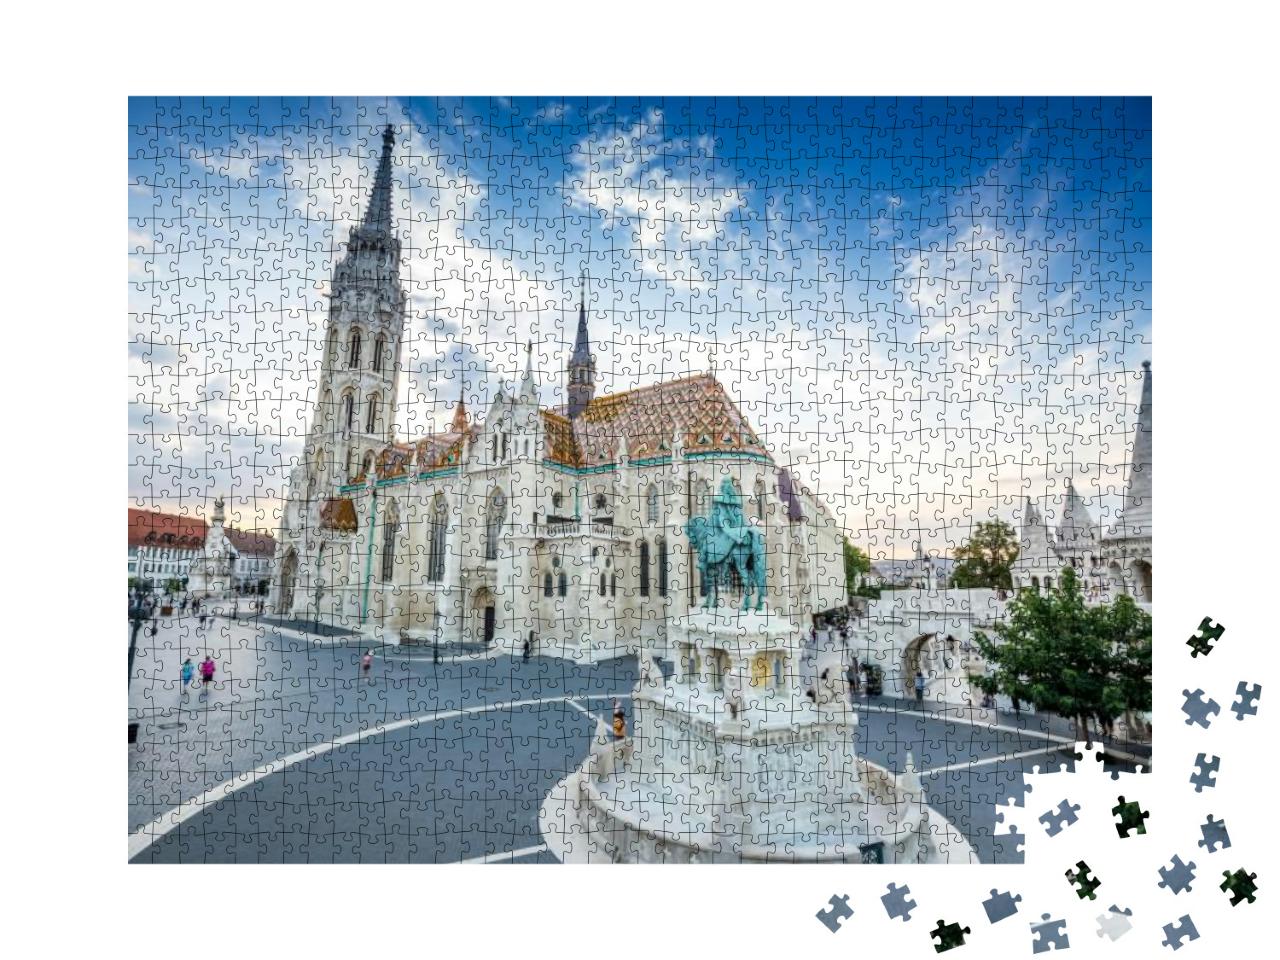 Puzzle 1000 Teile „Fischerbastei und Matthiaskirche in Budapest, Ungarn“